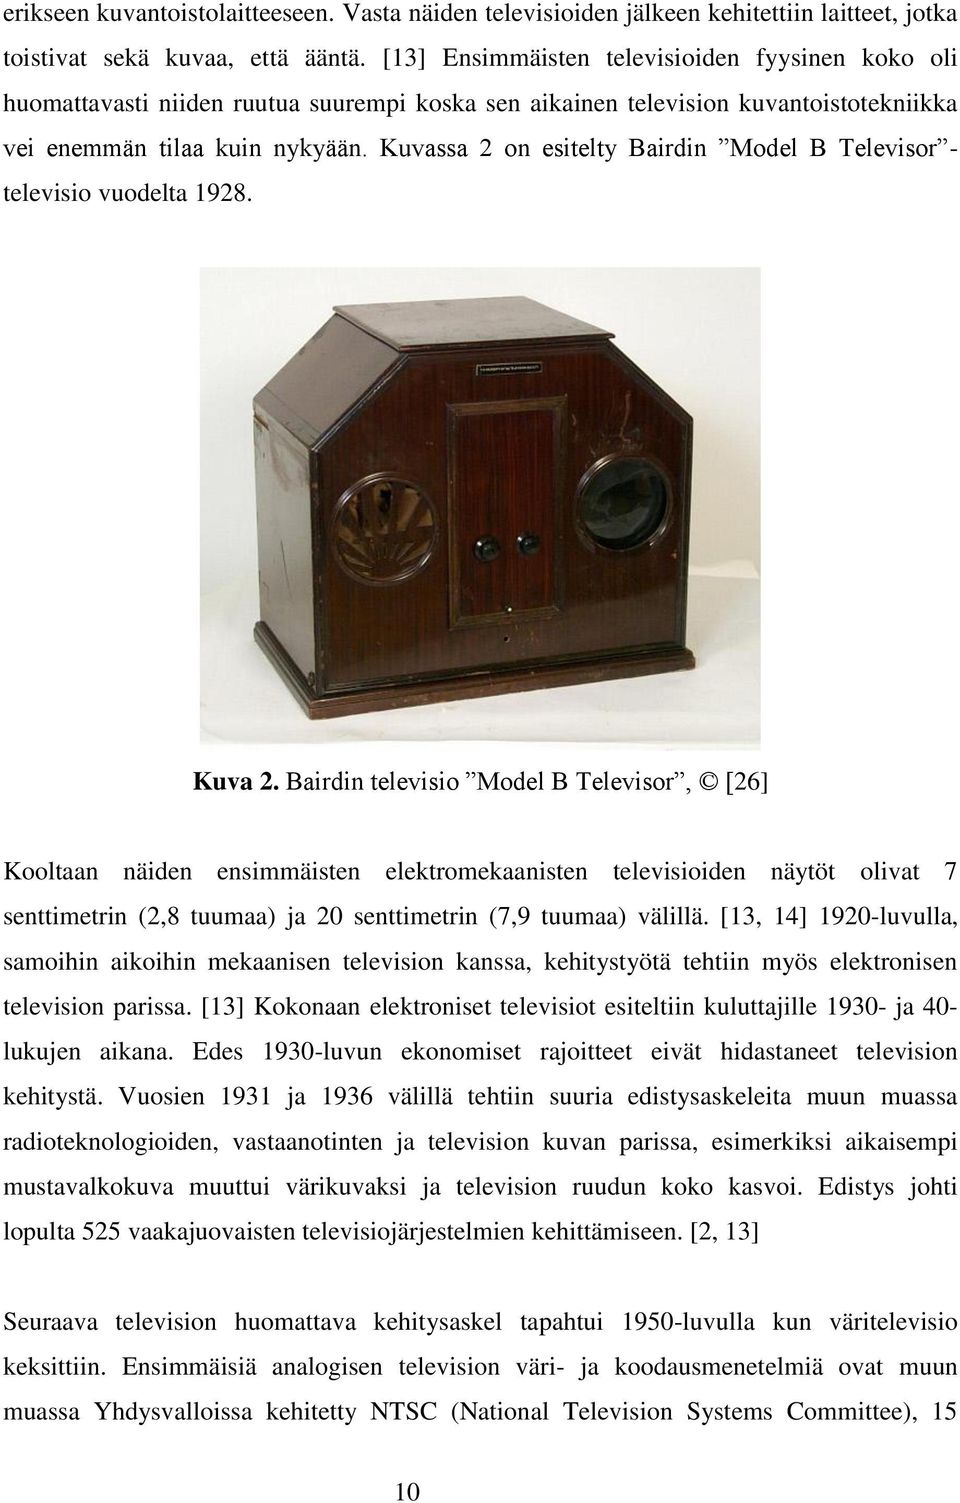 Kuvassa 2 on esitelty Bairdin Model B Televisor - televisio vuodelta 1928. Kuva 2.